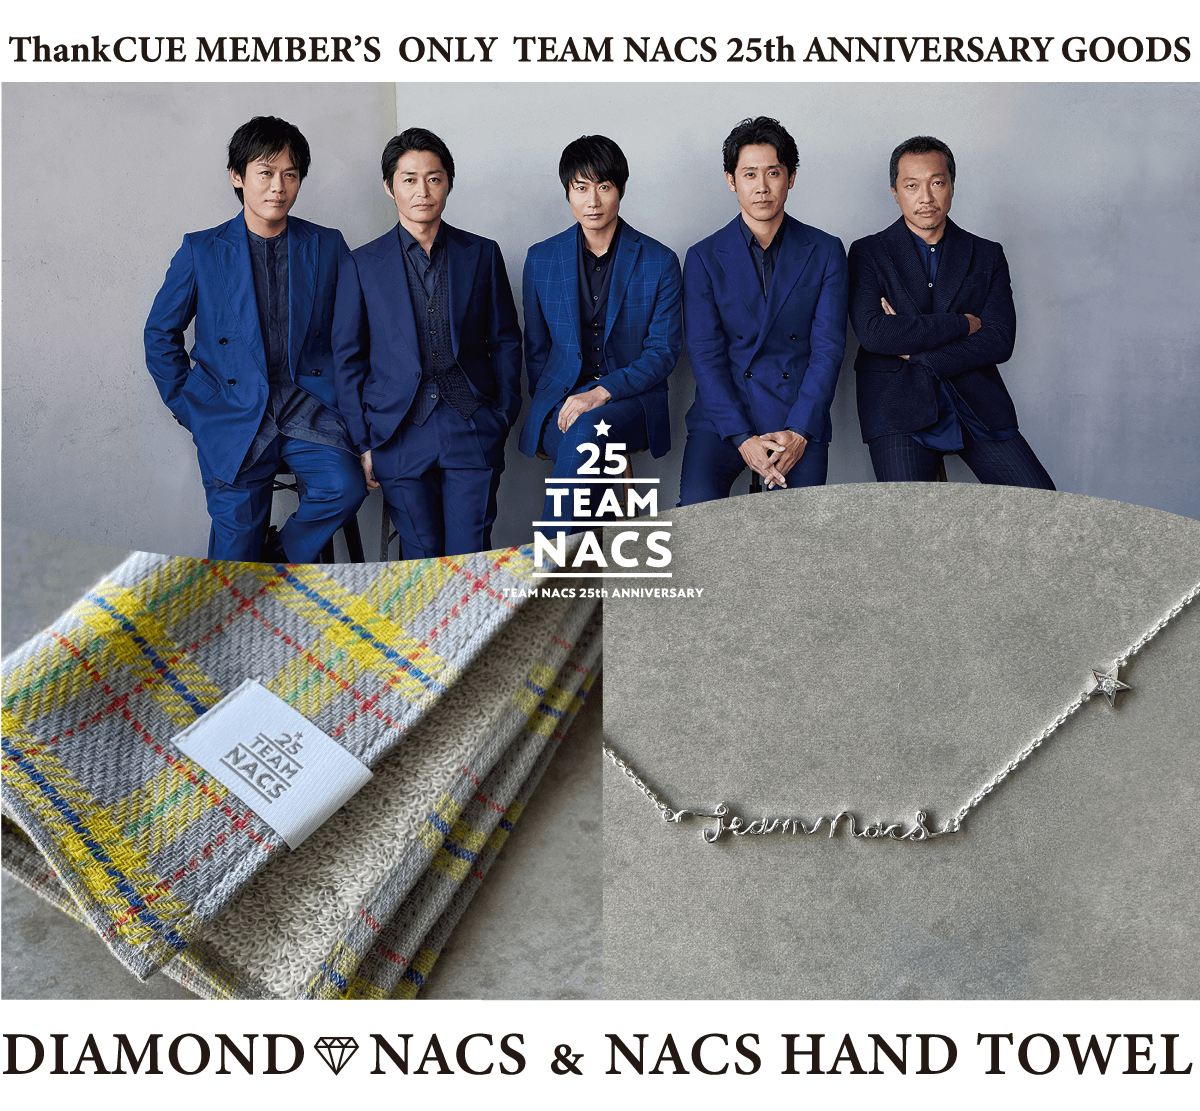 ファンクラブ Thankcue会員限定商品 Diamond Nacs Nacs Hand Towel 発売決定 Information Creative Office Cue Official Website